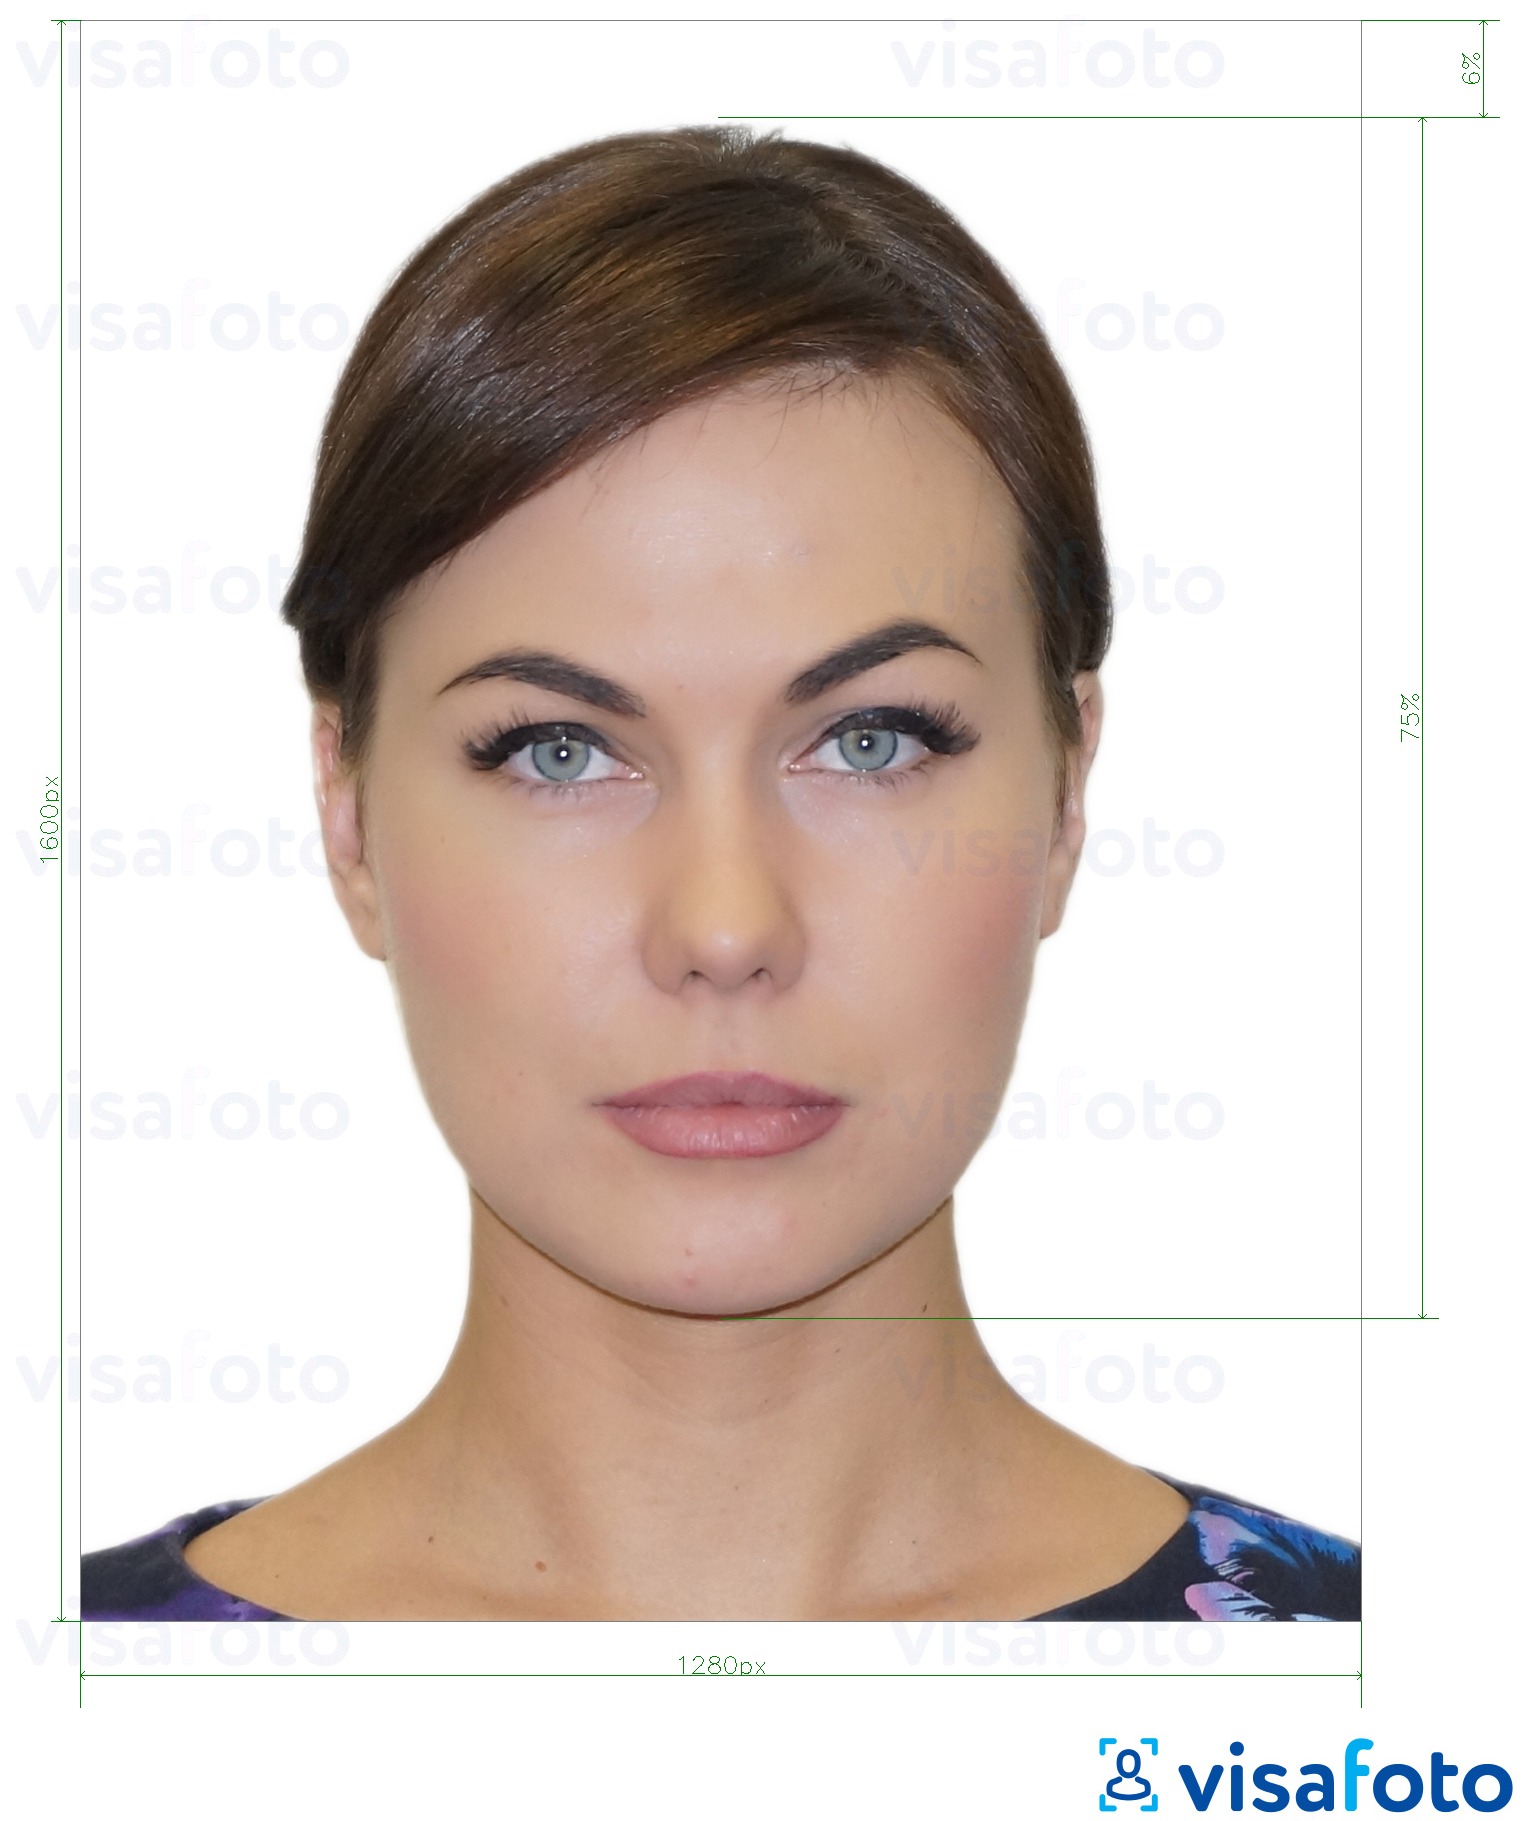 نمونه ی یک عکس برای گواهینامه رانندگی یونان 1280x1600 پیکسل با مشخصات دقیق